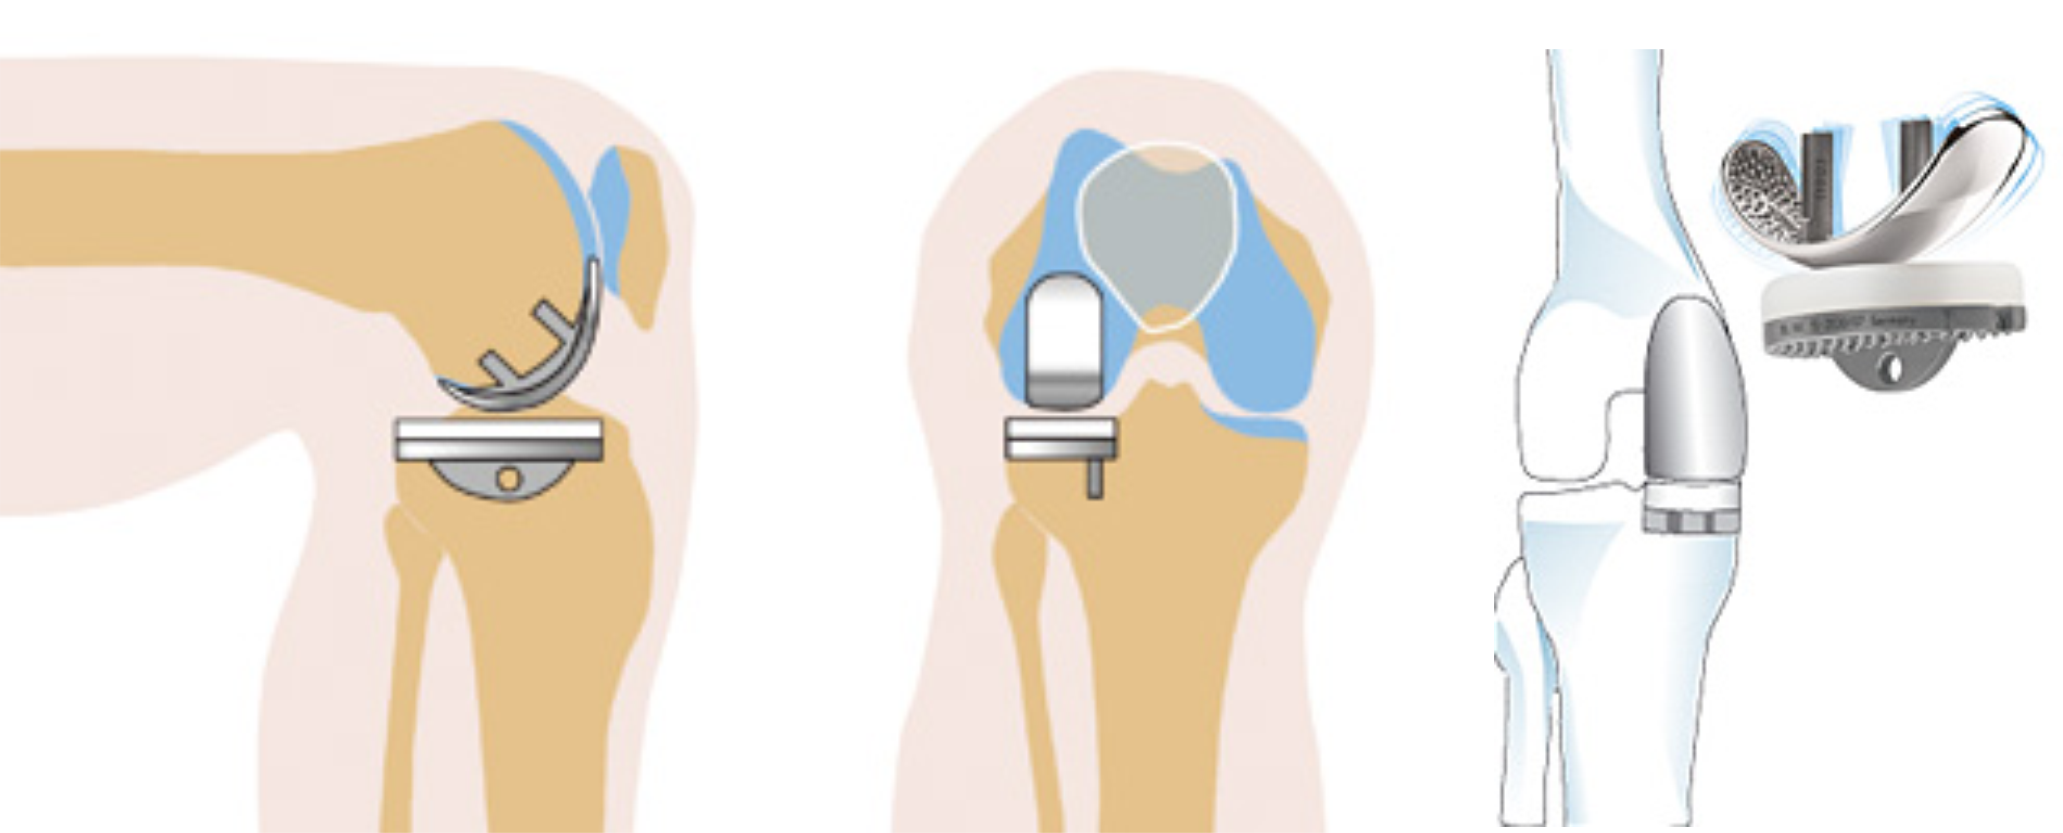 Модульный эндопротез коленного сустава цито. Одномыщелковое эндопротезирование коленного сустава. Схема эндопротеза коленного сустава. Эндопротез коленного сустава операция.